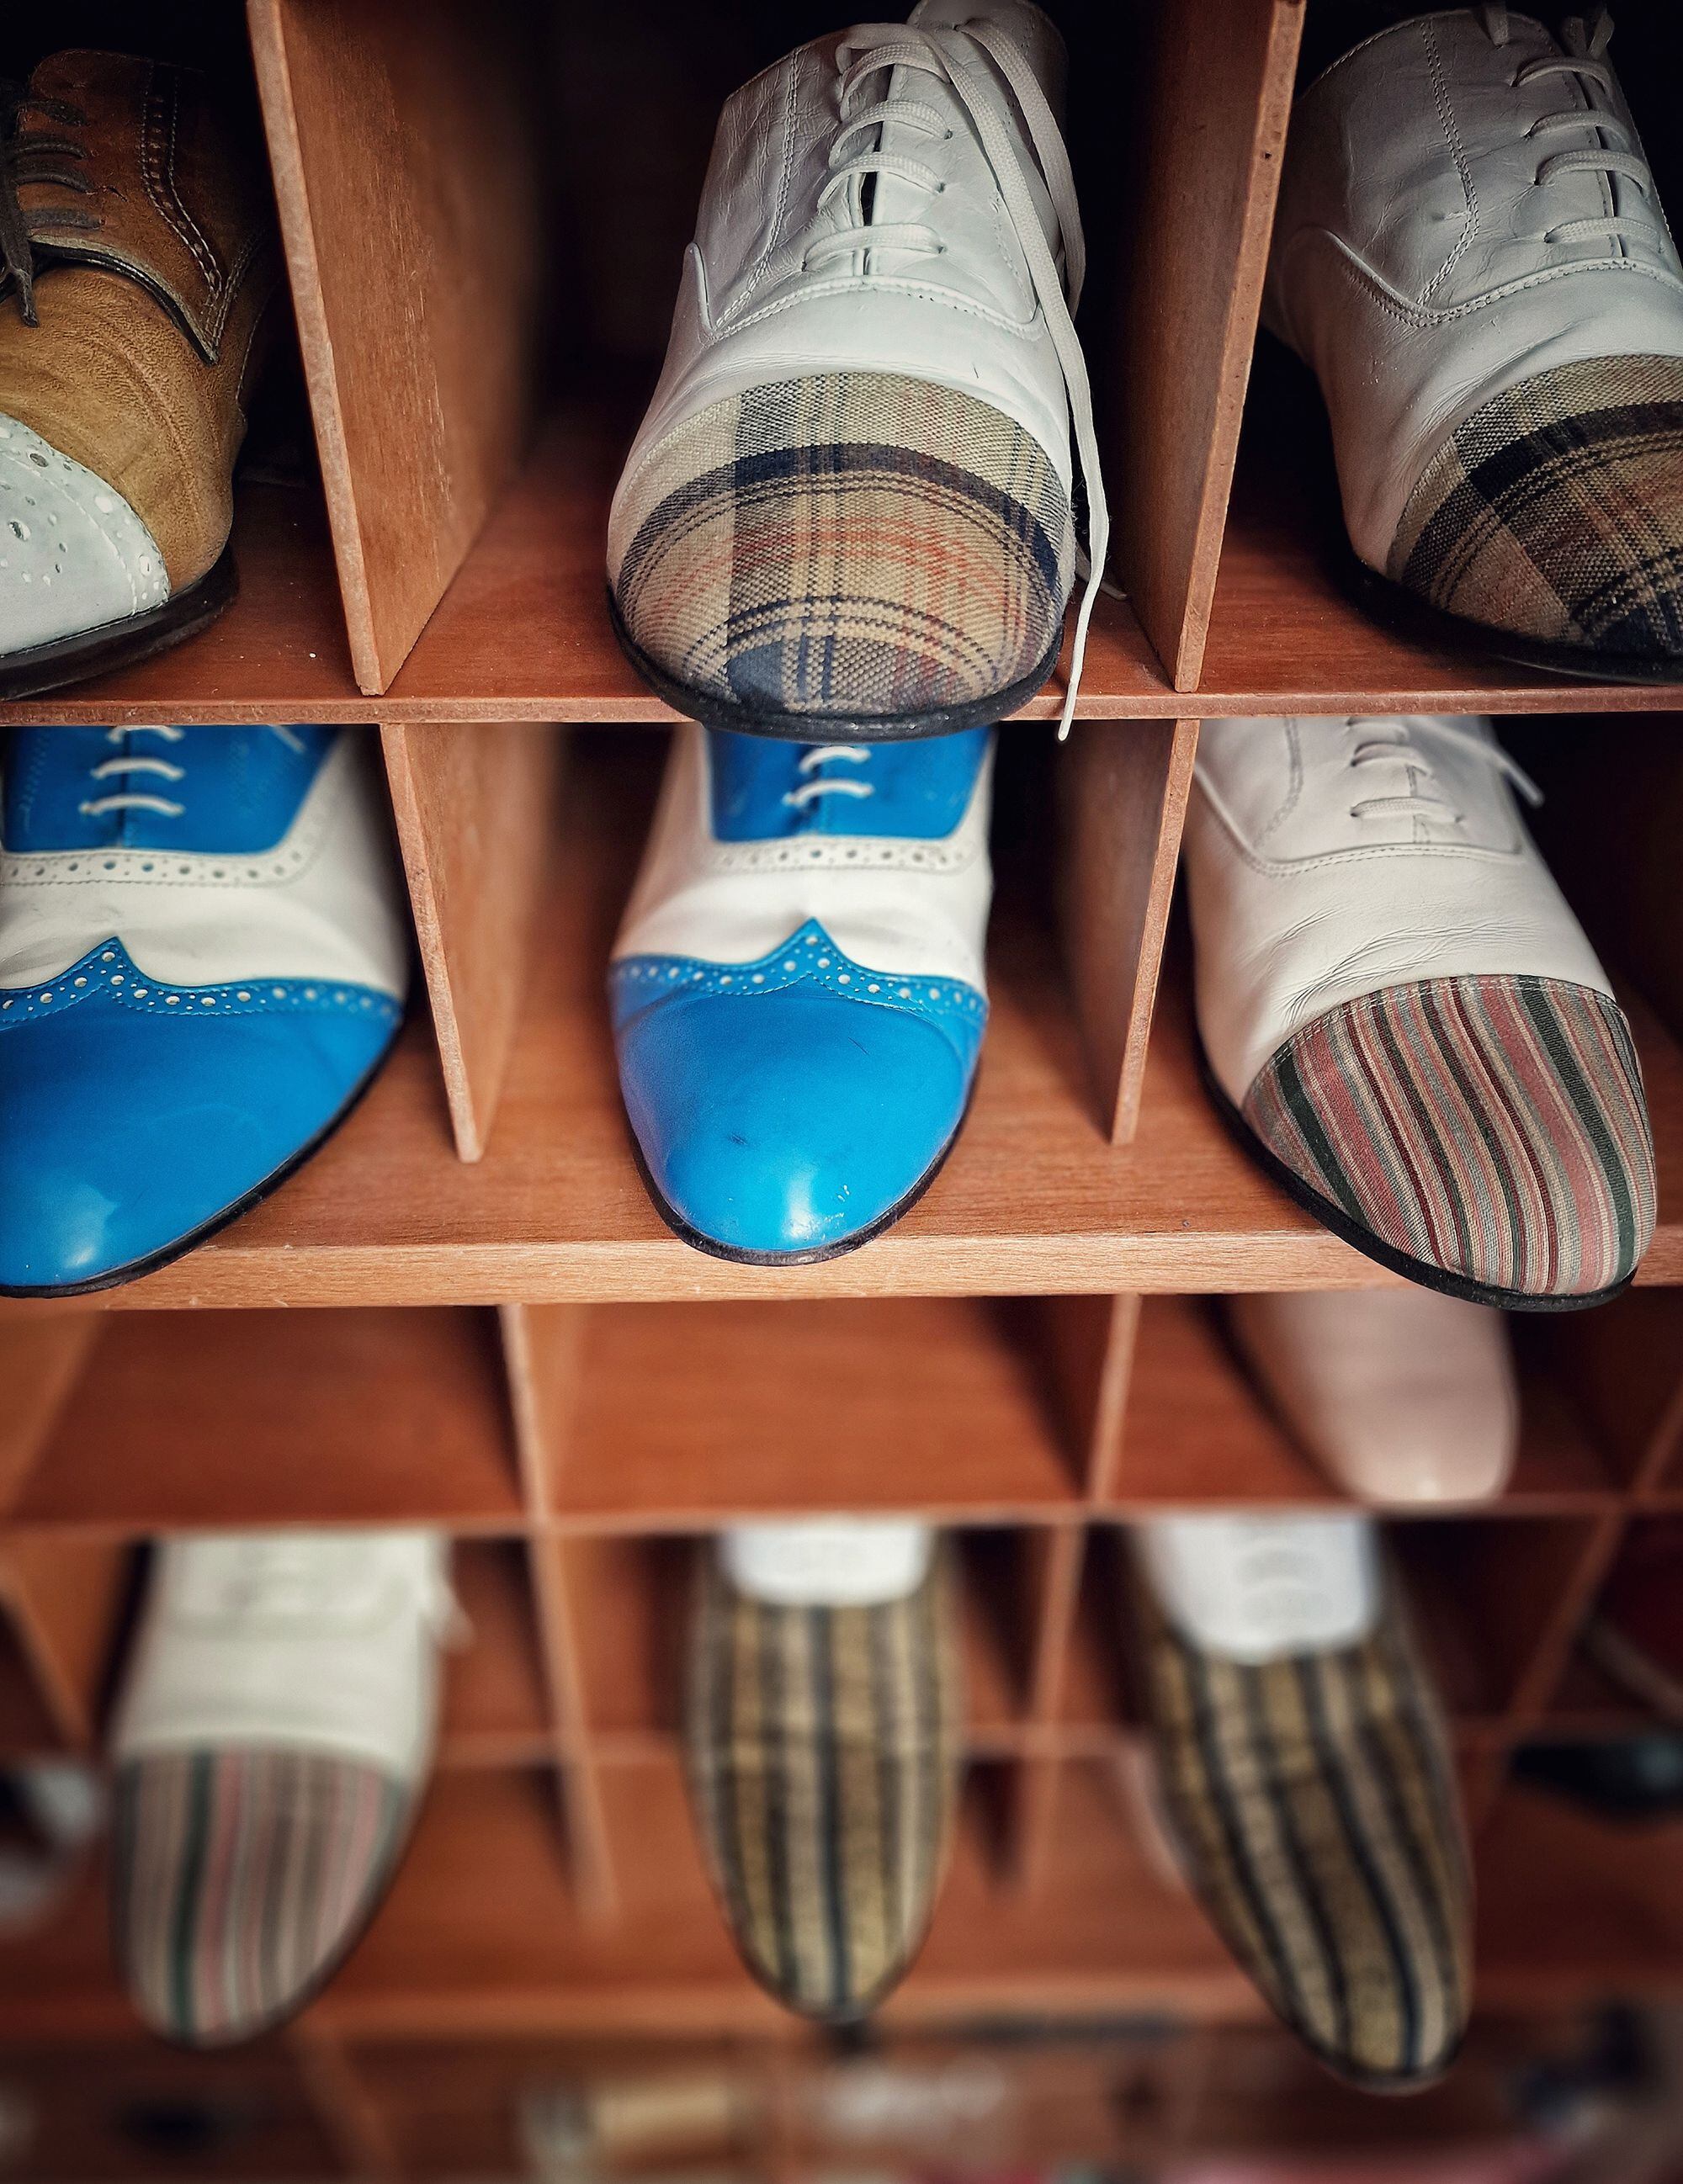 Un armario de zapatos bicolor listos para ser calzados.